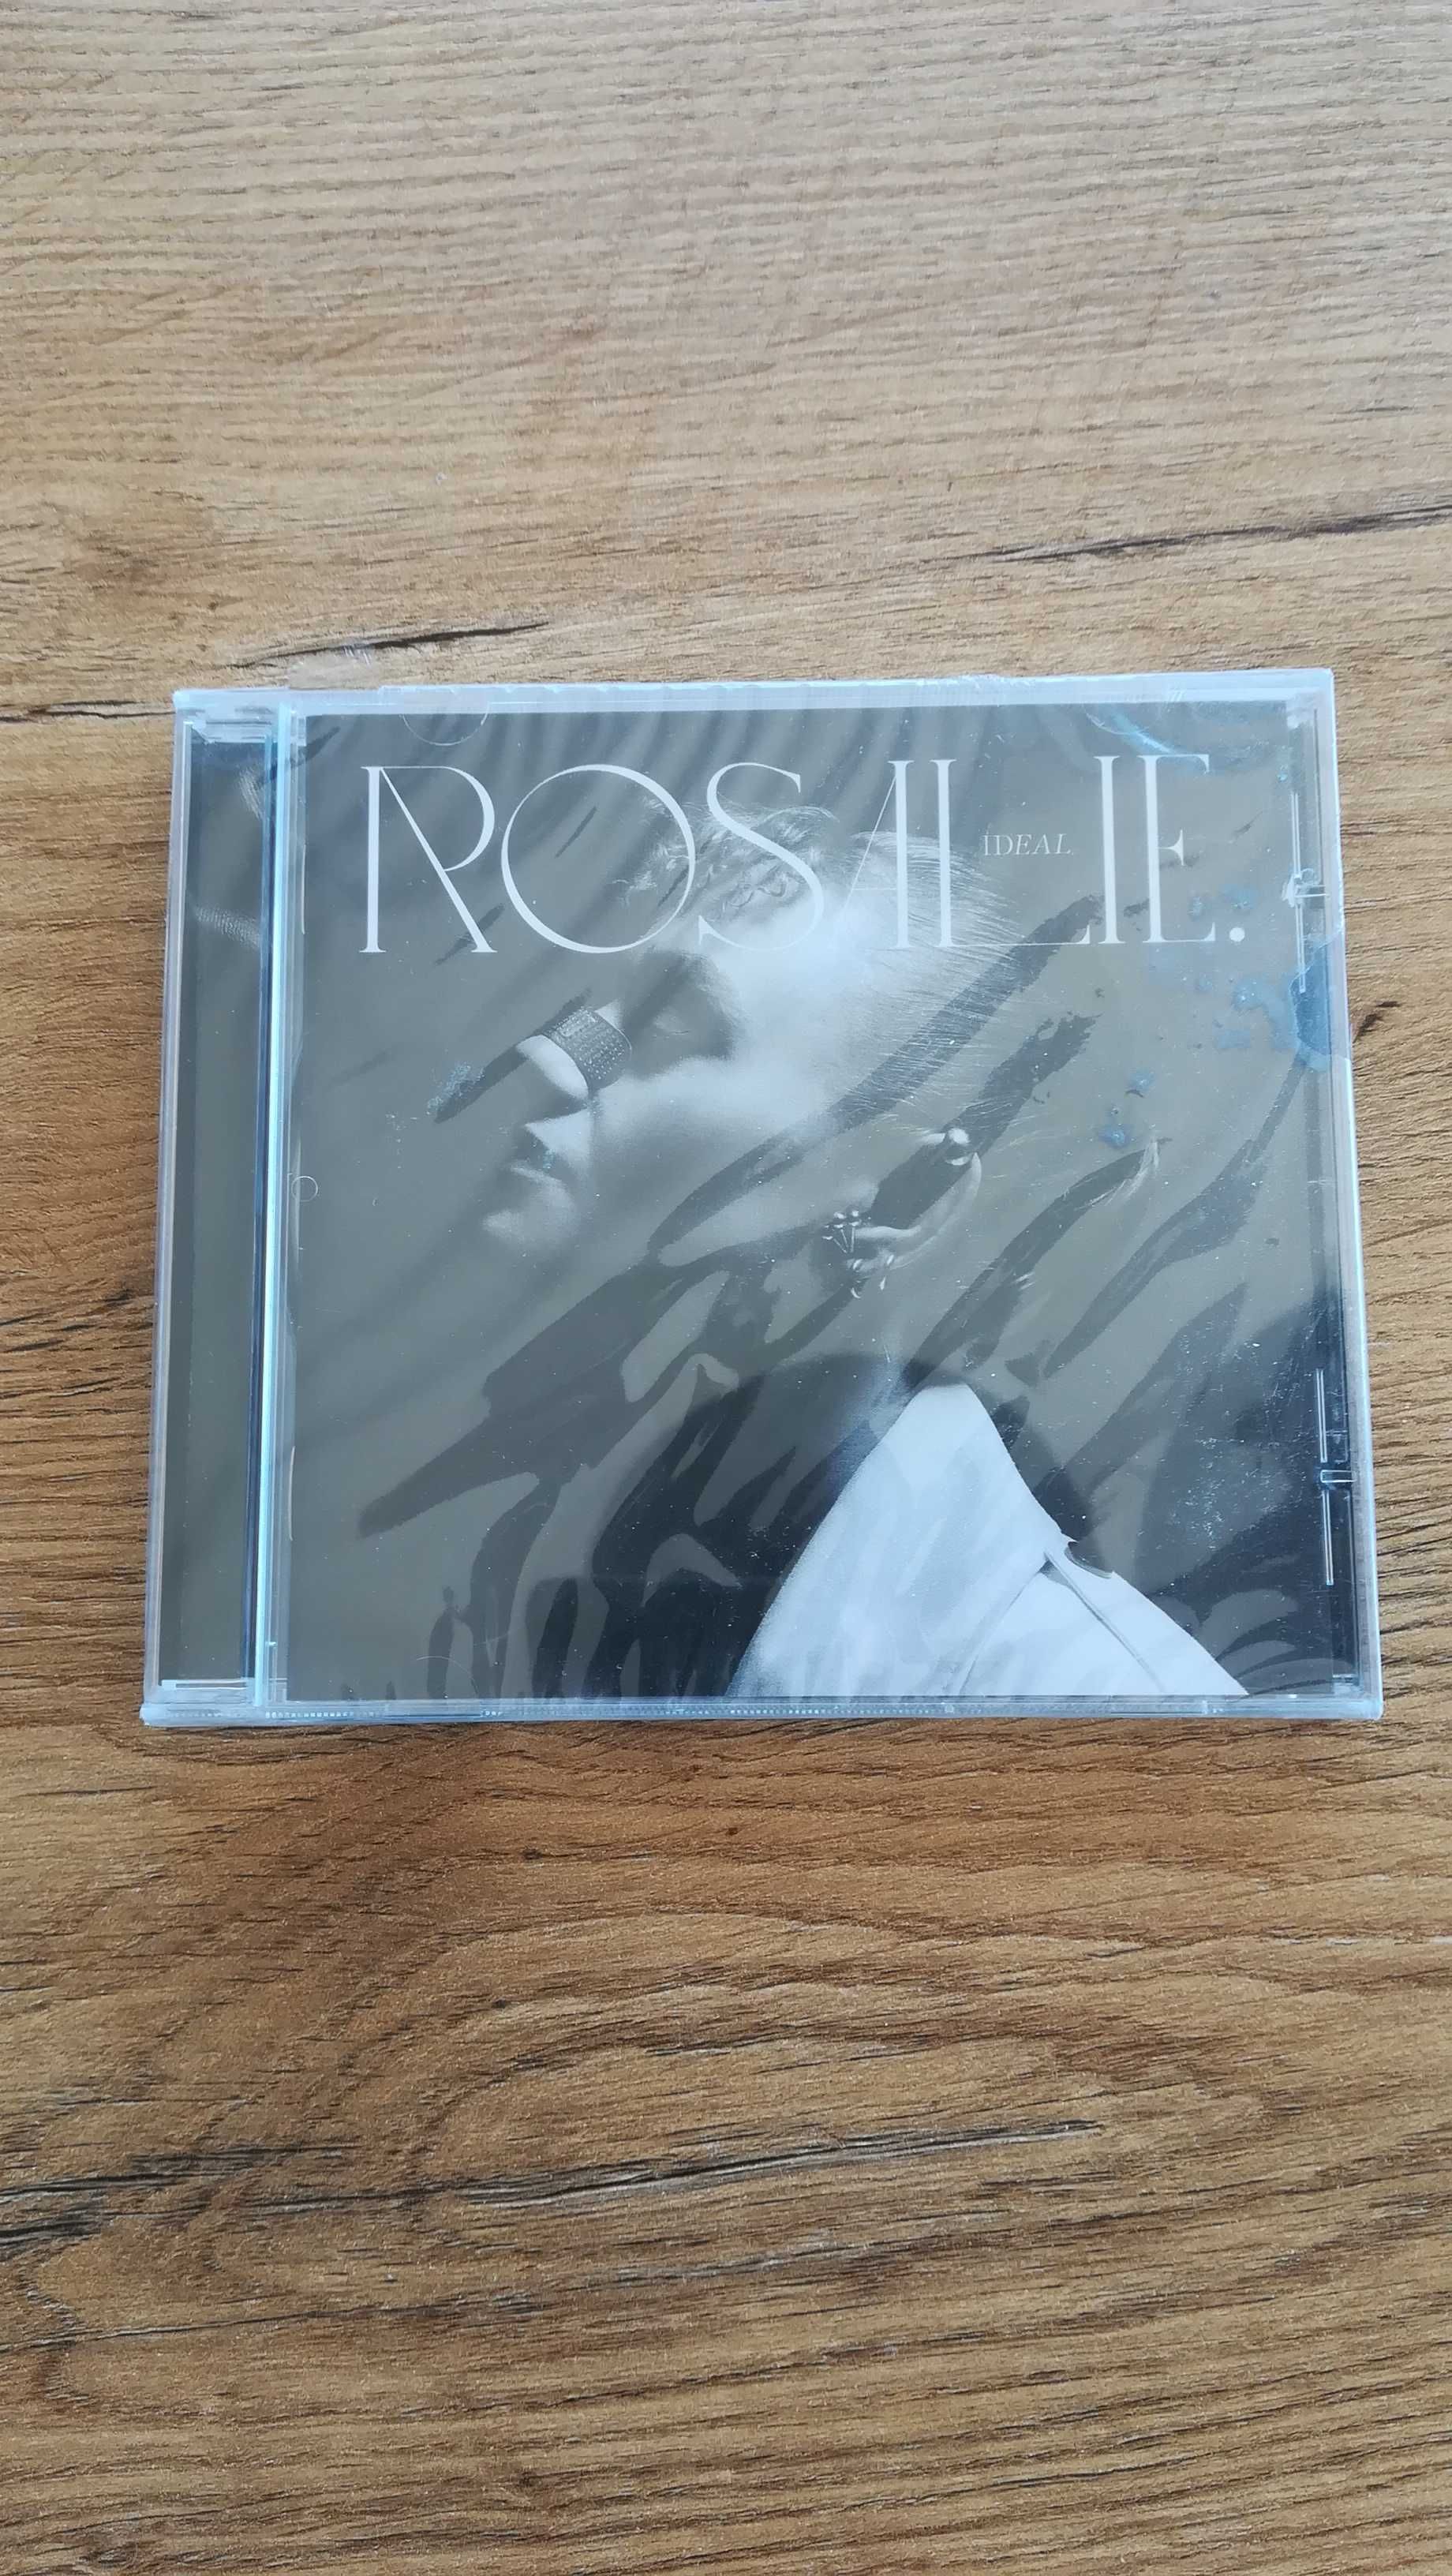 Rosalie - Ideal Płyta CD nowa zafoliowana